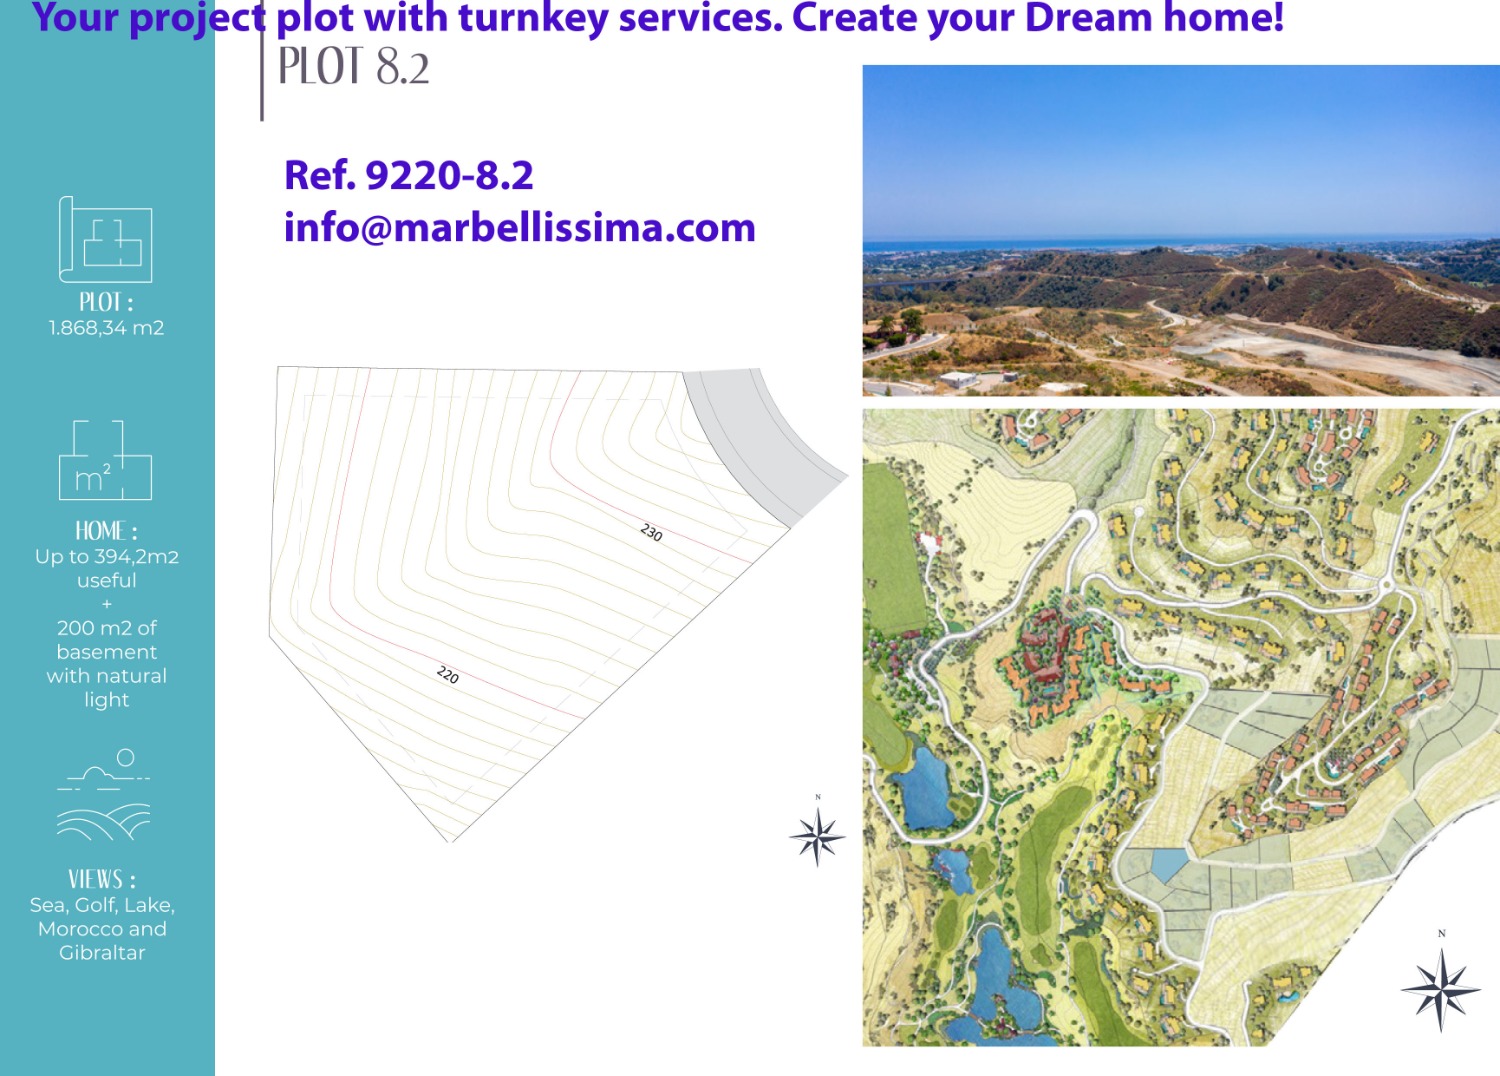 Uw project plot met turnkey service en maak uw eigentijdse en innovatieve Dream home .